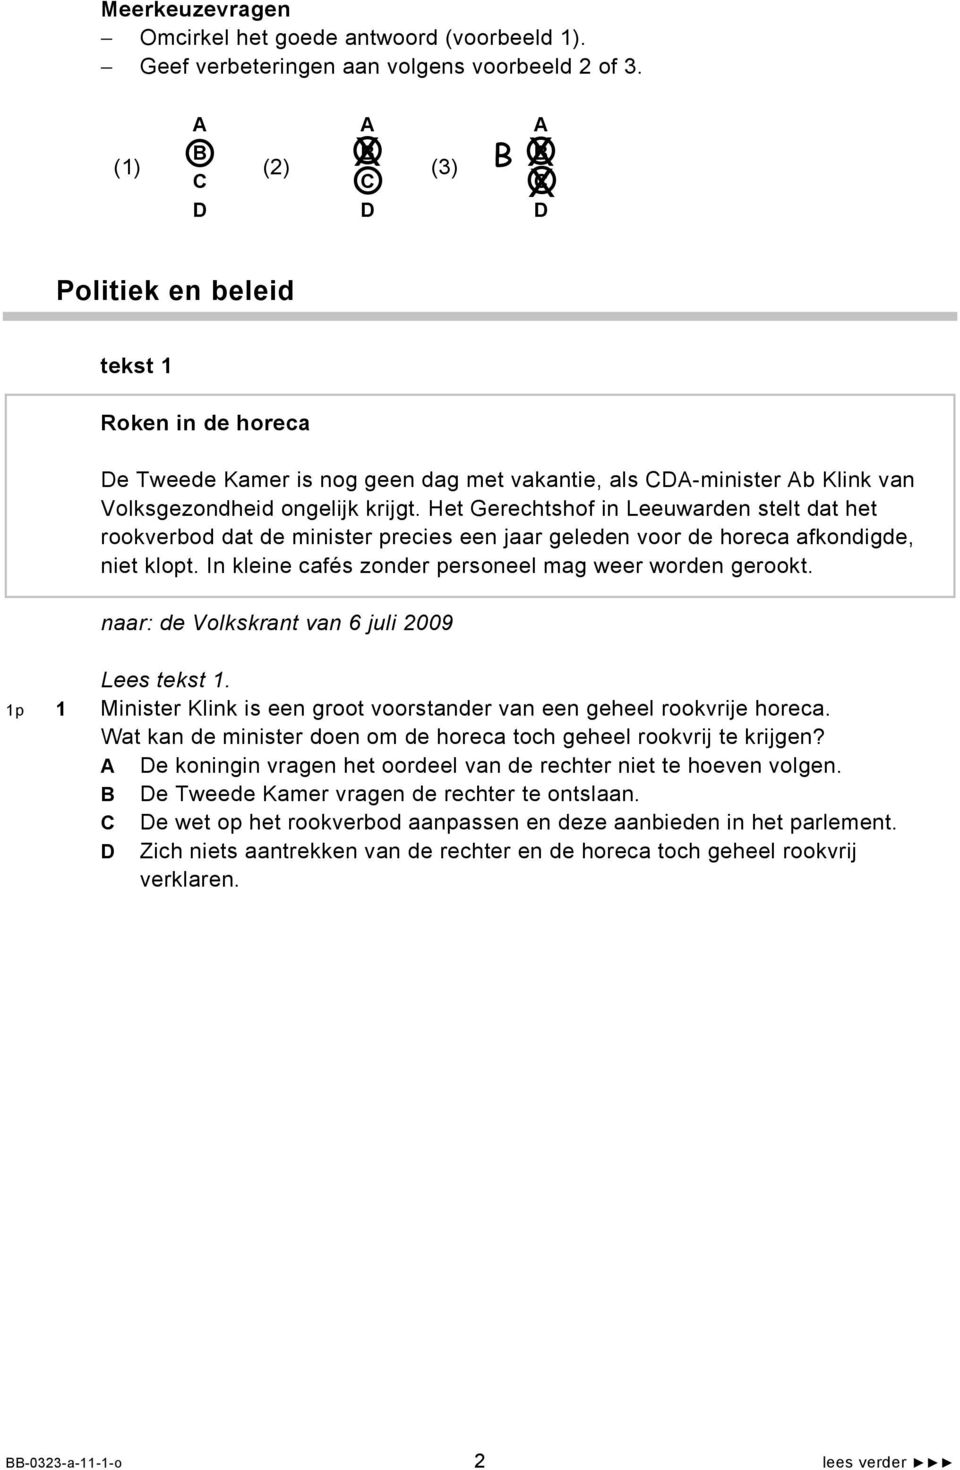 Het Gerechtshof in Leeuwarden stelt dat het rookverbod dat de minister precies een jaar geleden voor de horeca afkondigde, niet klopt. In kleine cafés zonder personeel mag weer worden gerookt.